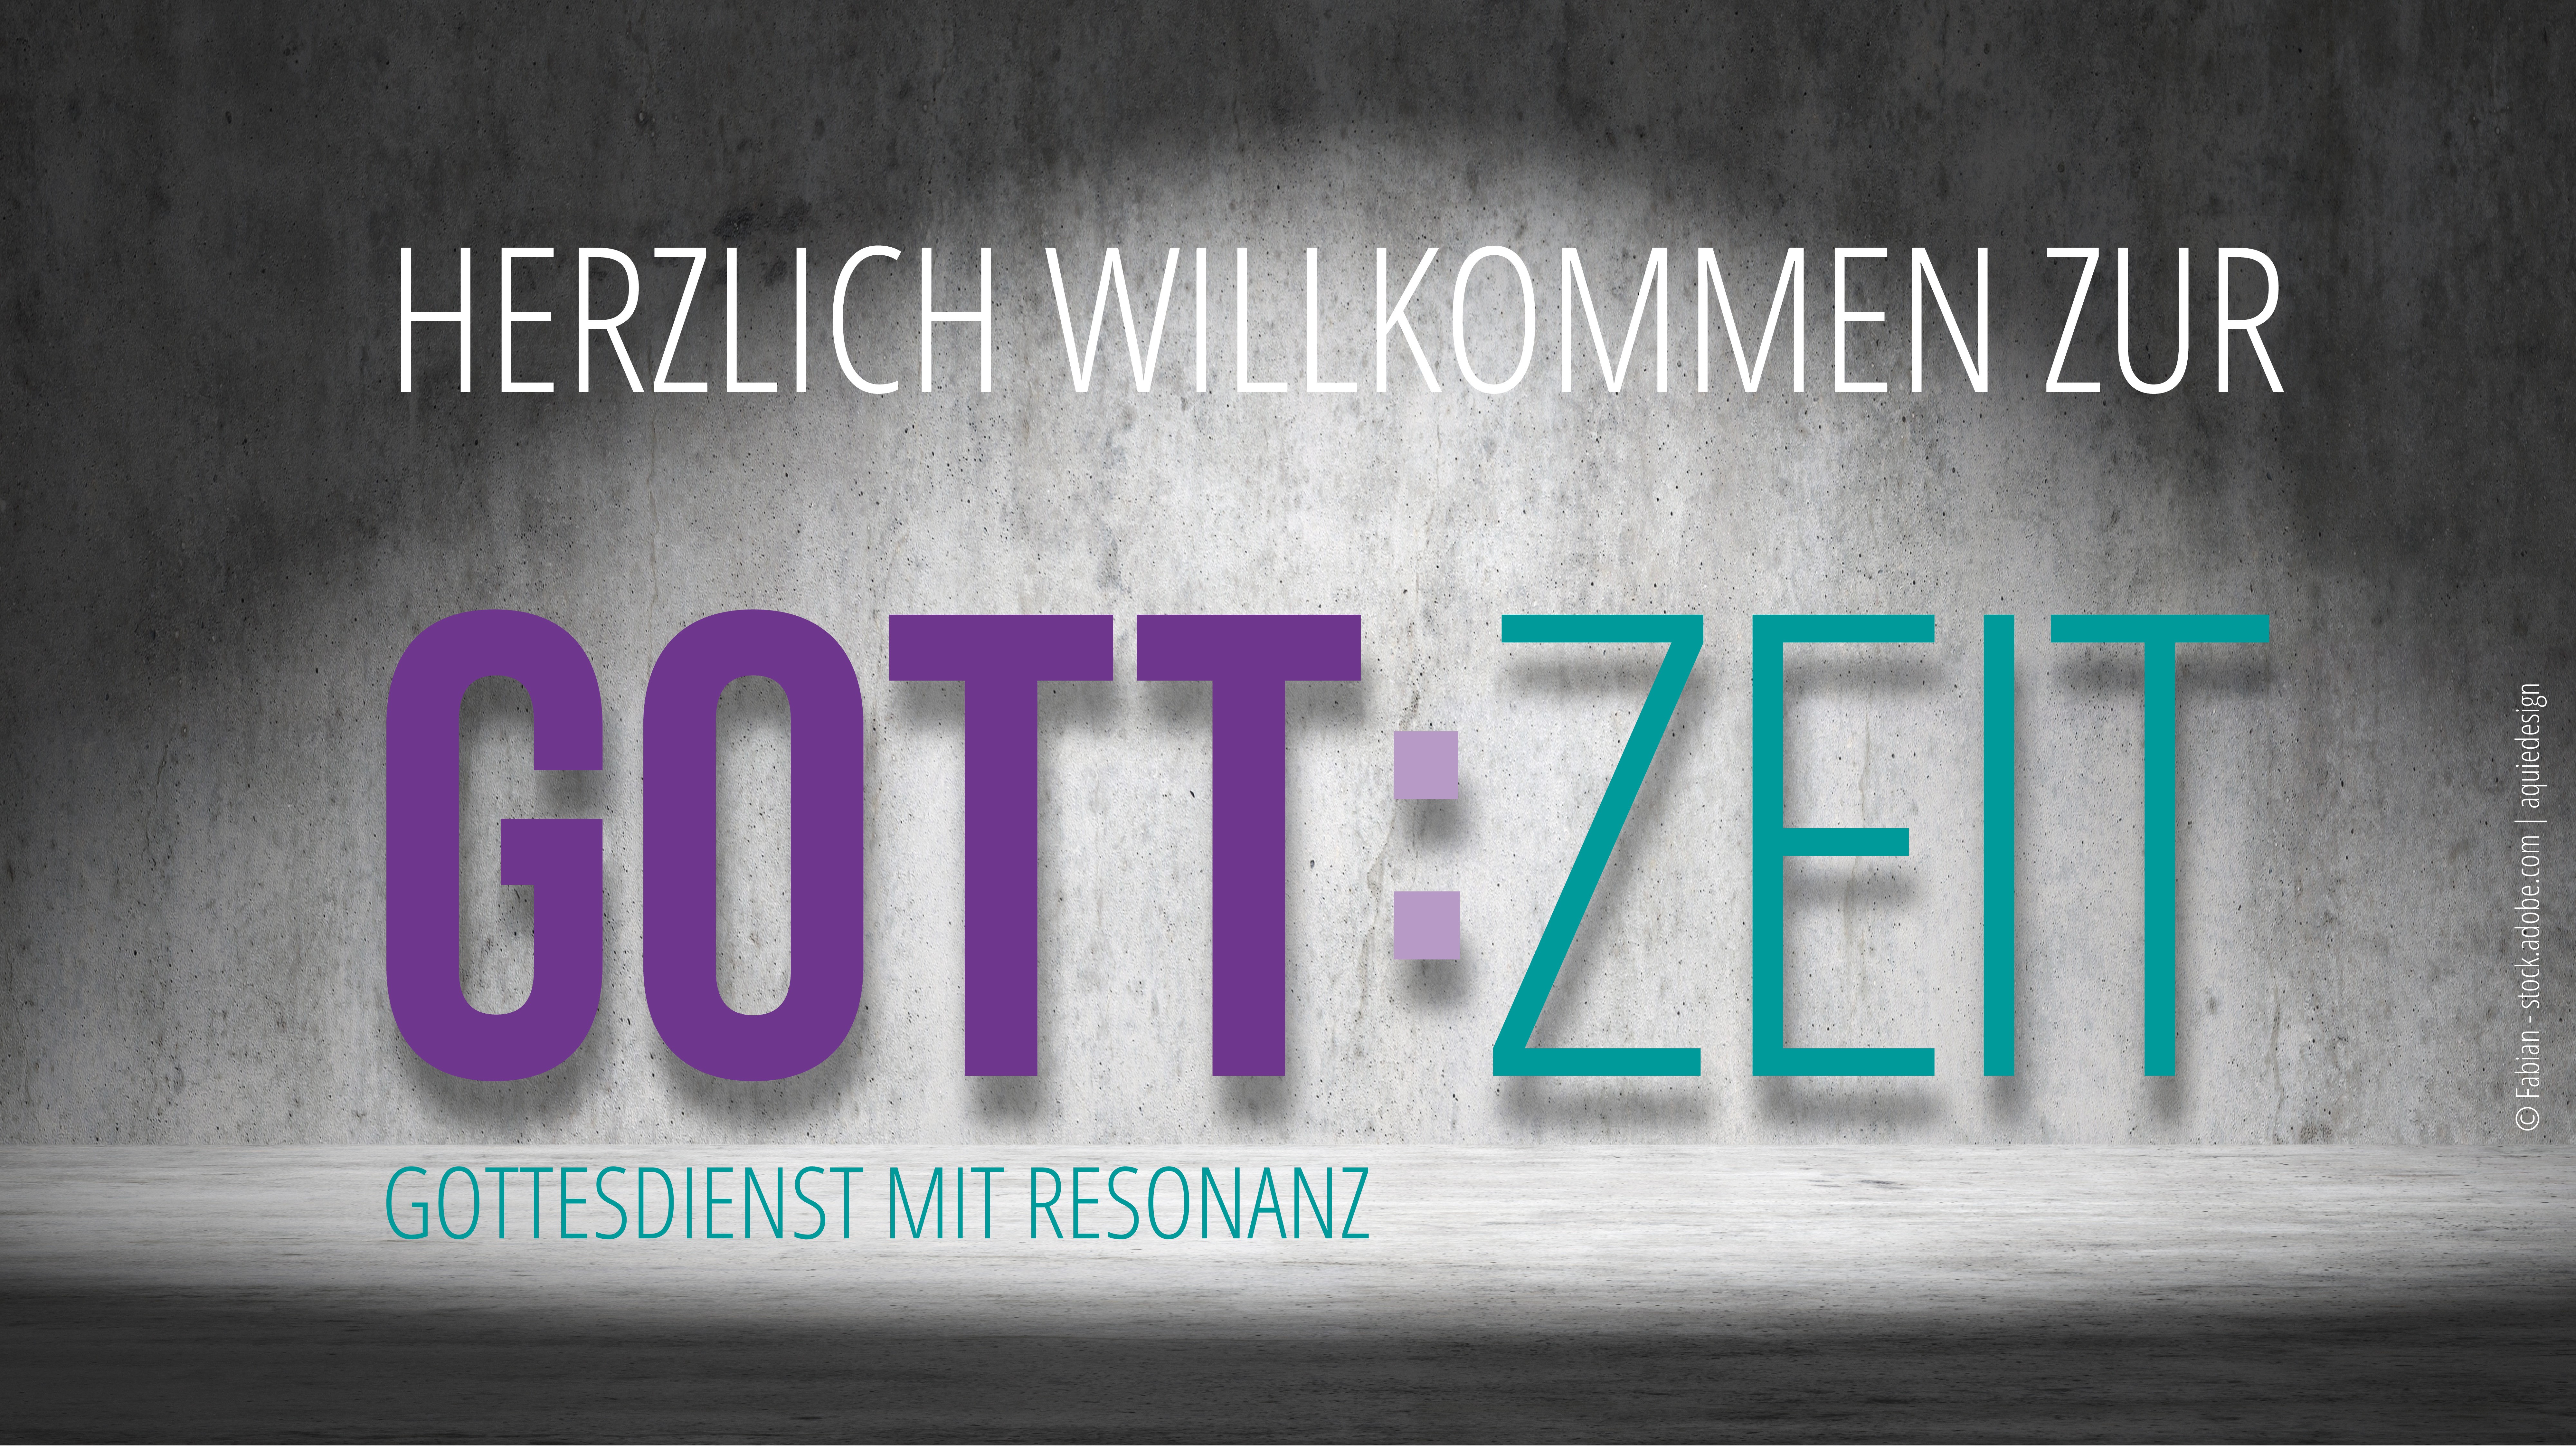 Logo GottZeit mit Herzlich willkommen (c) Fabian - stock.adobe.com | aquiedesign